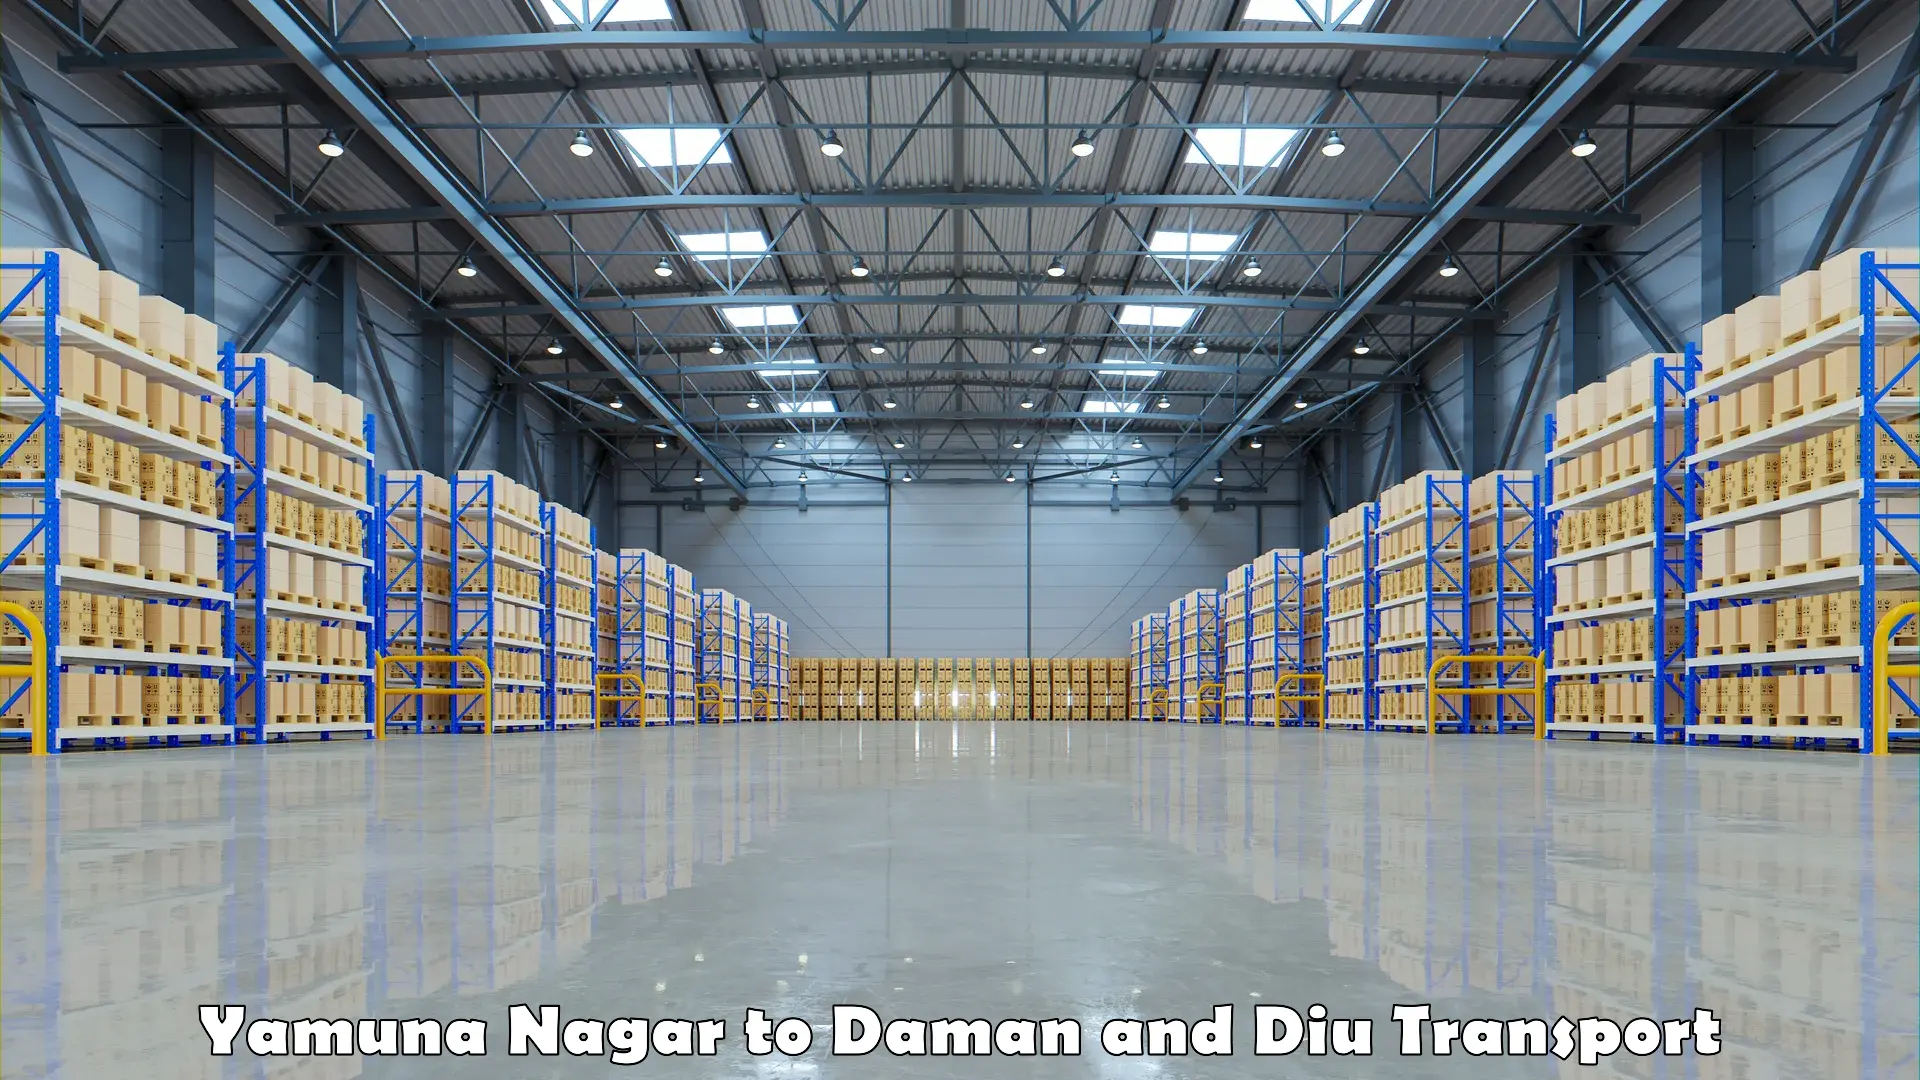 Nearest transport service Yamuna Nagar to Daman and Diu